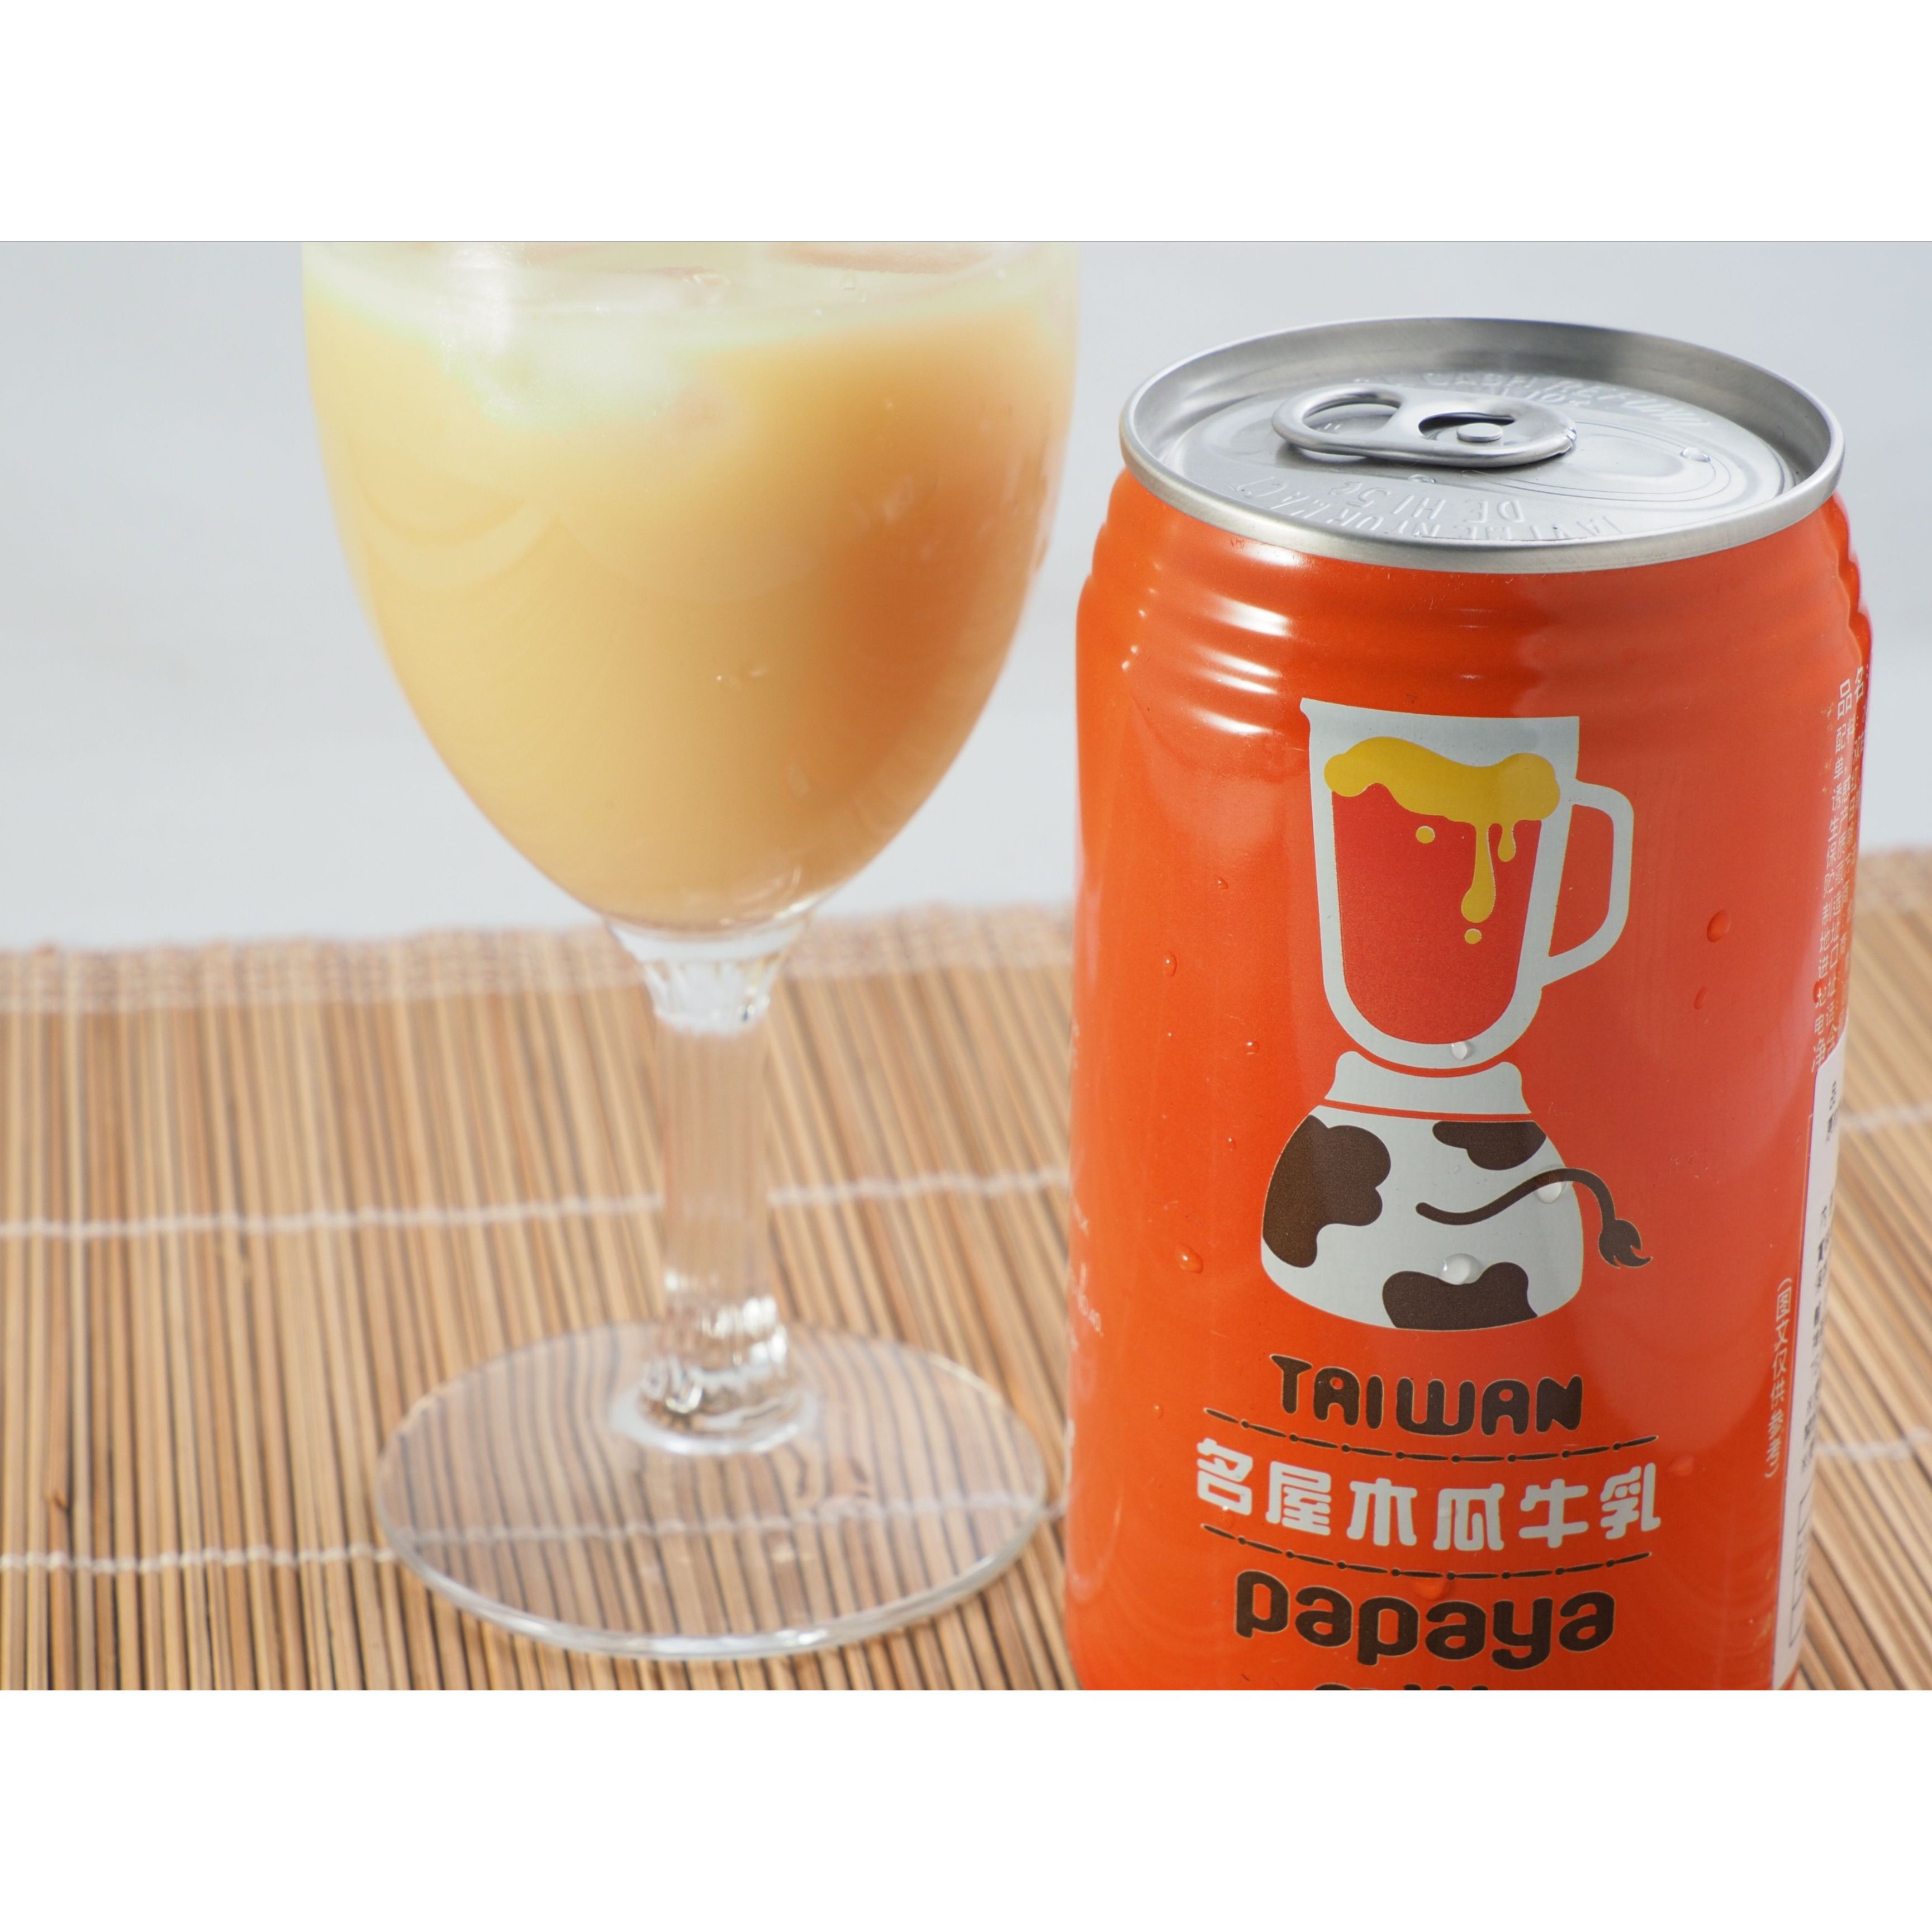 台湾パパイヤミルク 340ml 名屋木瓜牛乳 パ...の商品画像